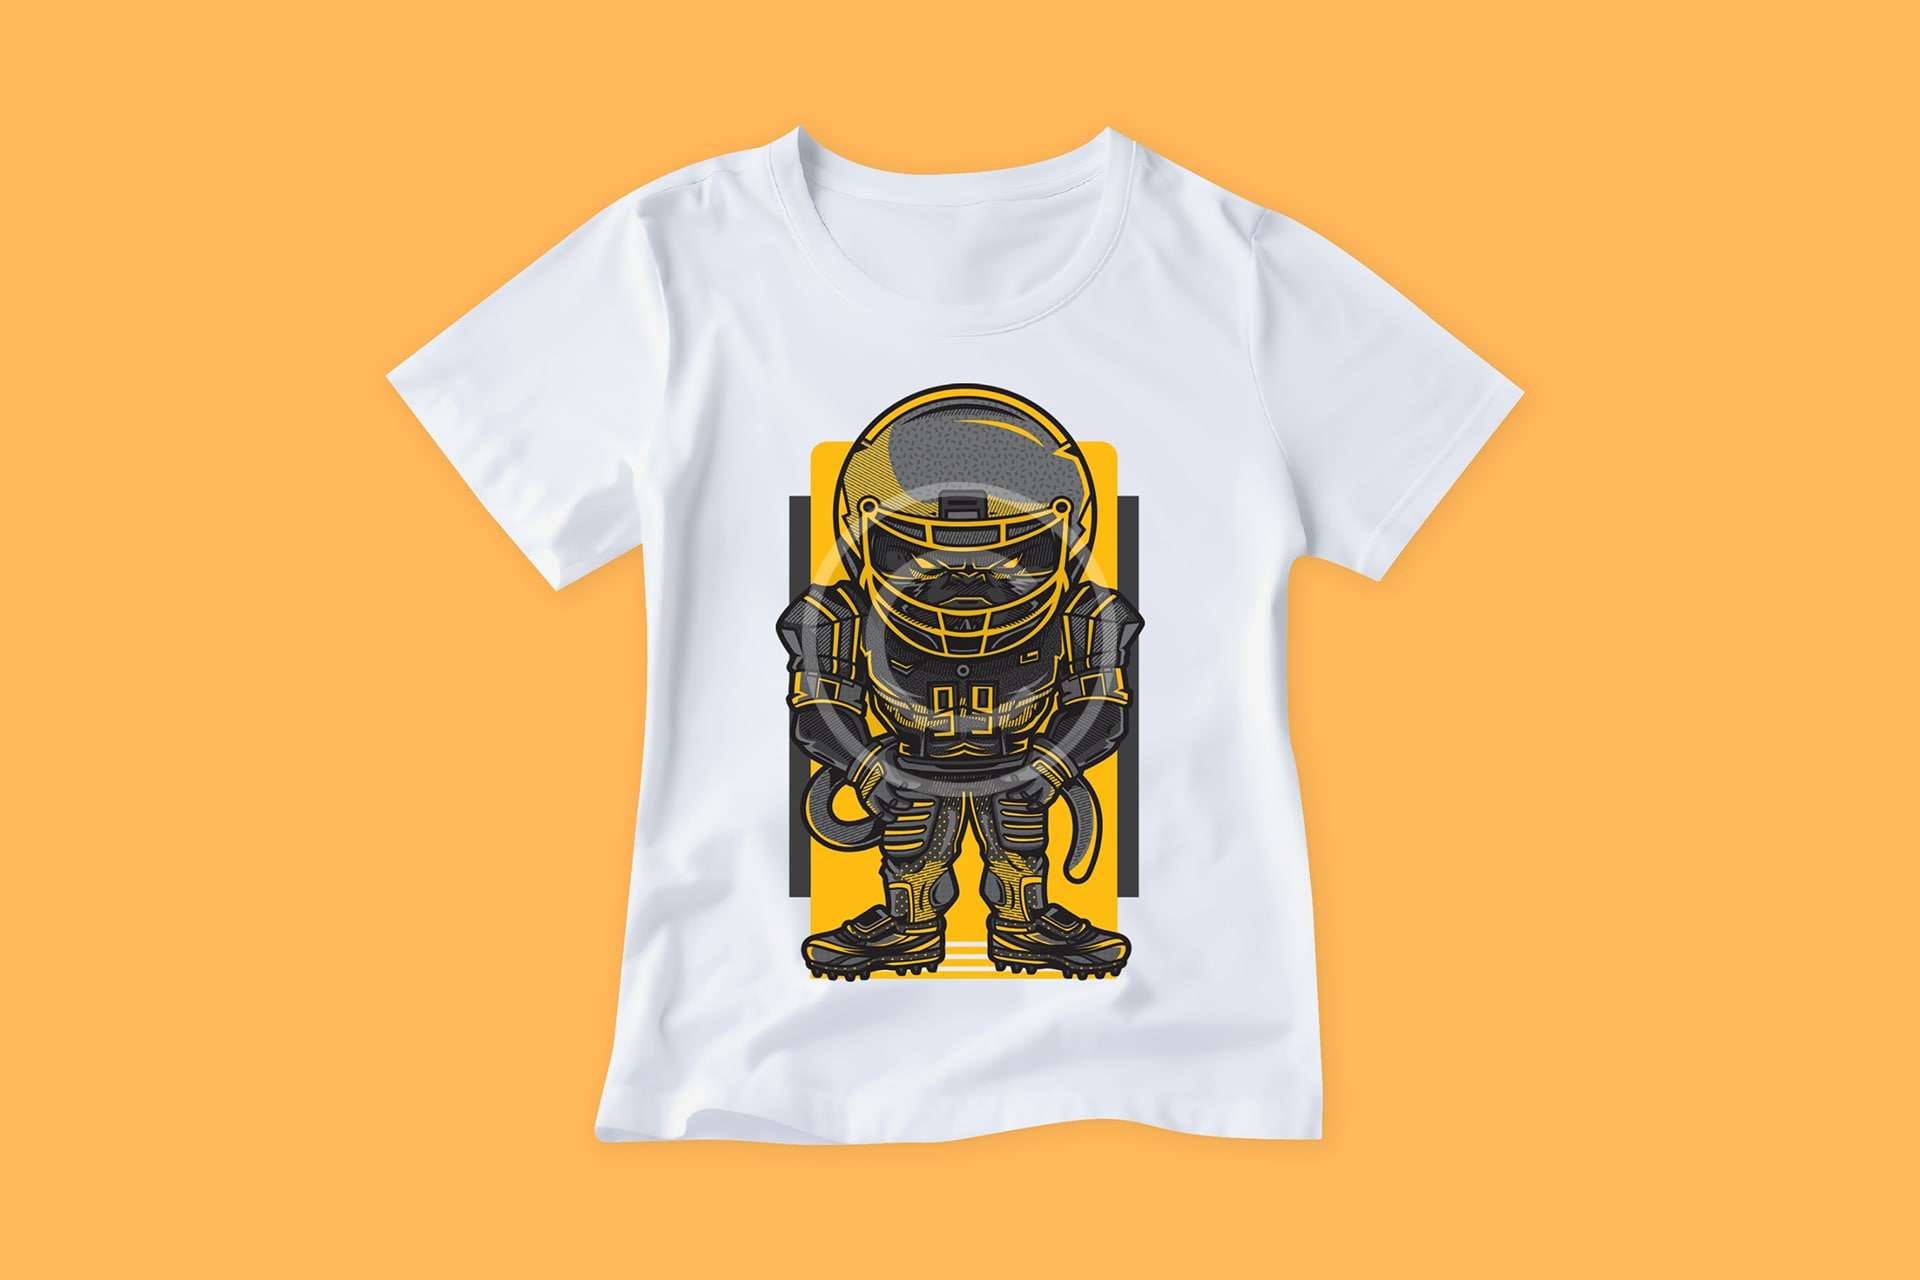 Astronaut t-shirt